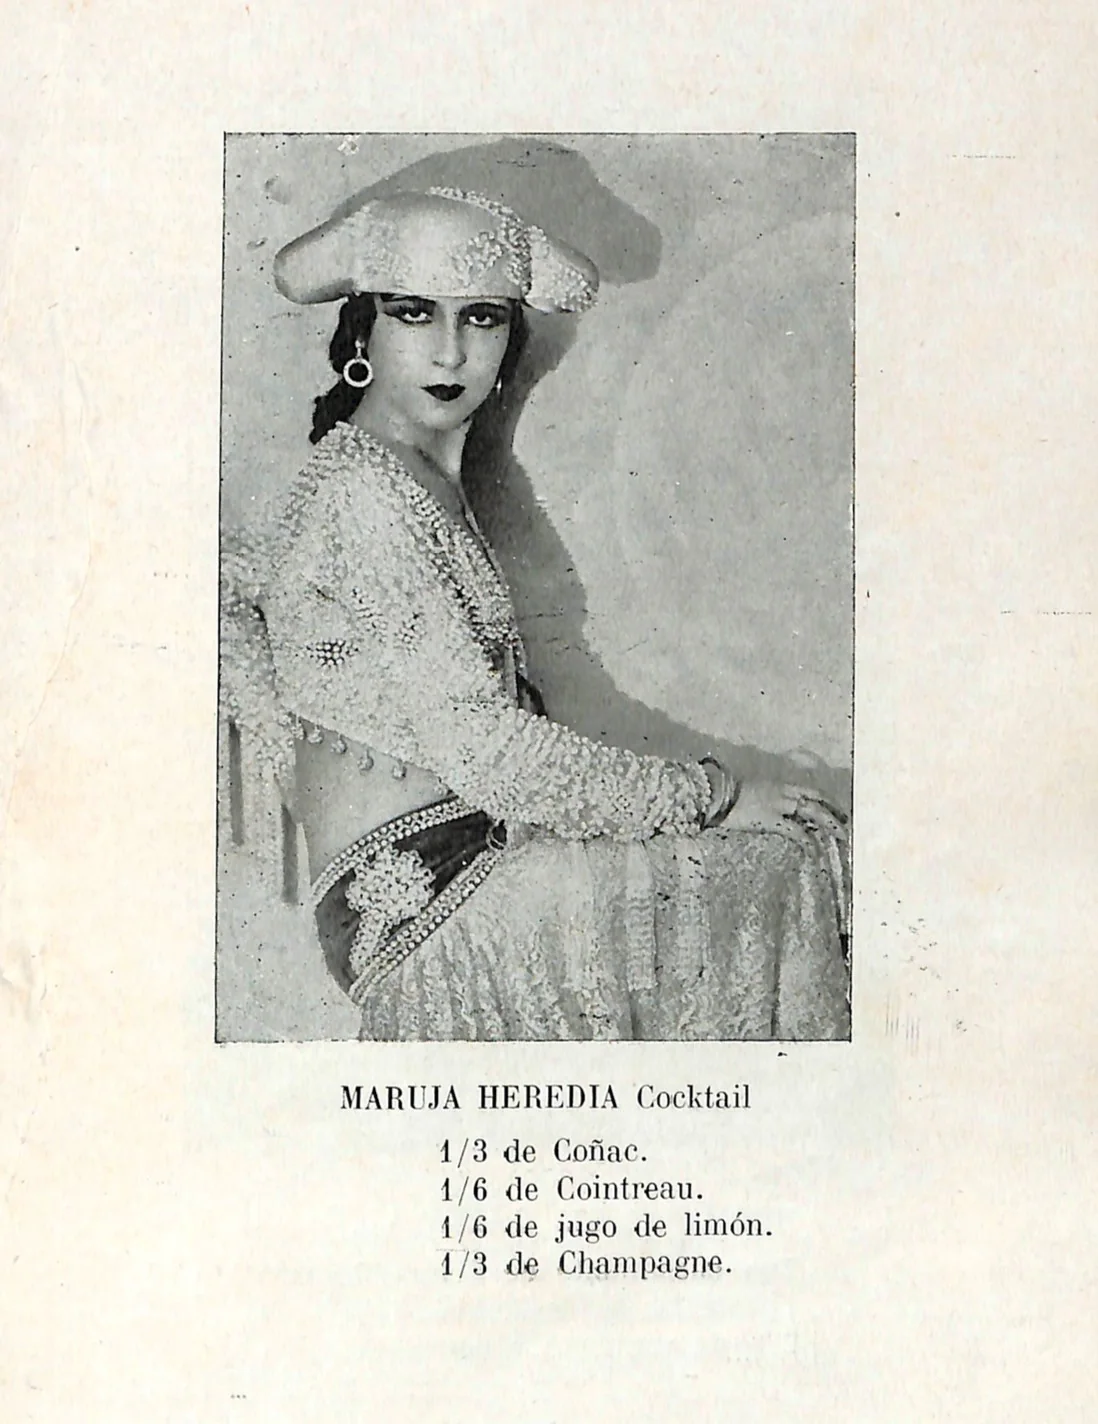 En 1933 se publicó uno de los libros sobre coctelería más curiosos de España. Algo picantón, estaba dedicado a cupletistas y famosas artistas de variedades